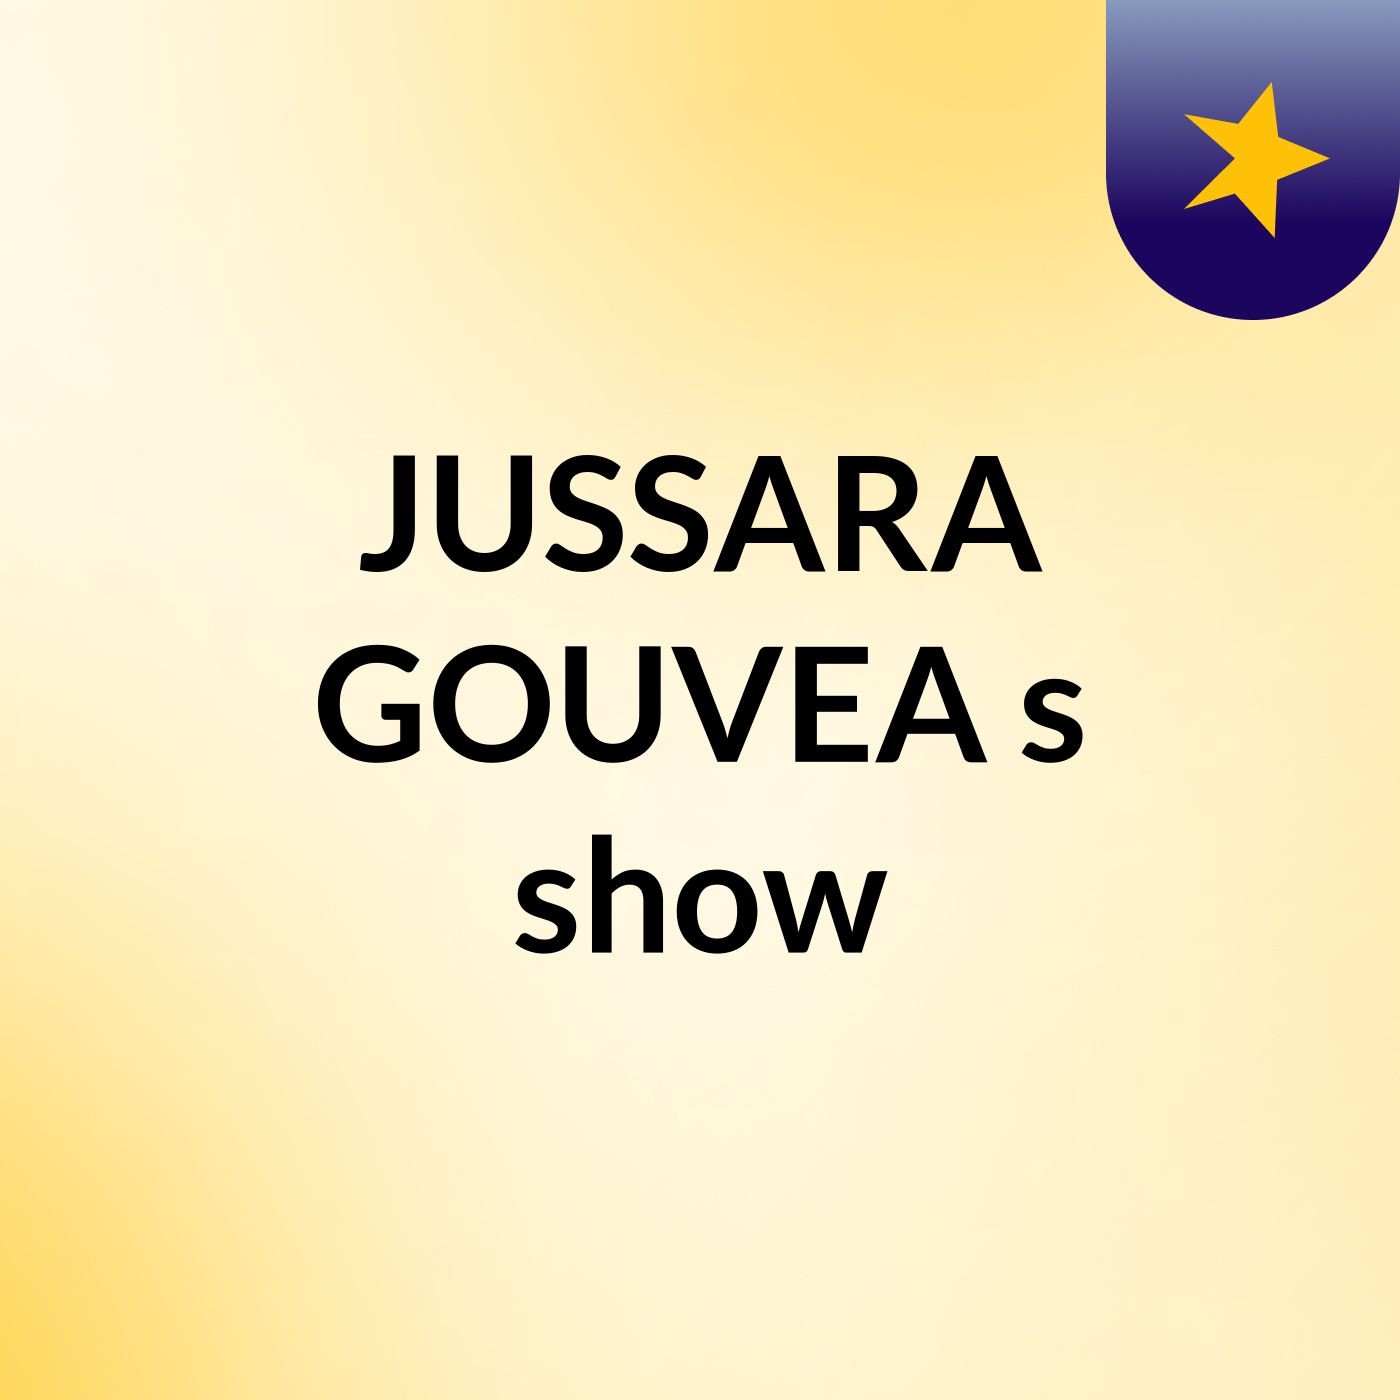 JUSSARA GOUVEA's show